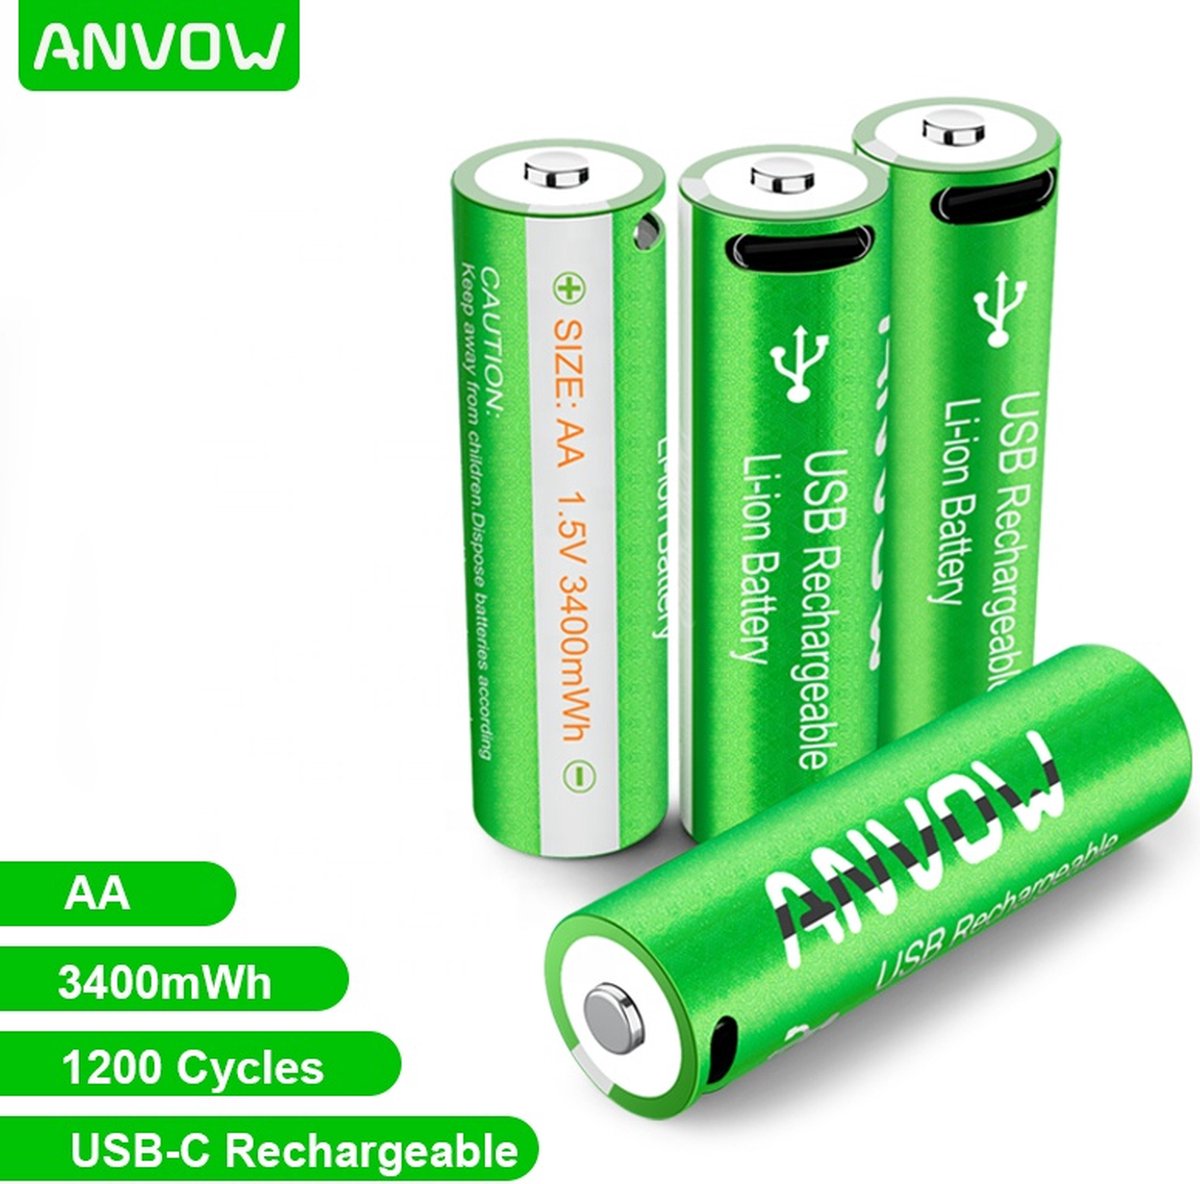 Anvow Li-ion AA Oplaadbare Batterijen 1.5V (4stuks) - Markt Leidend 3400 mWh Hoge Capaciteit met 4in1 Oplaadkabel -2 uur Snel Laden